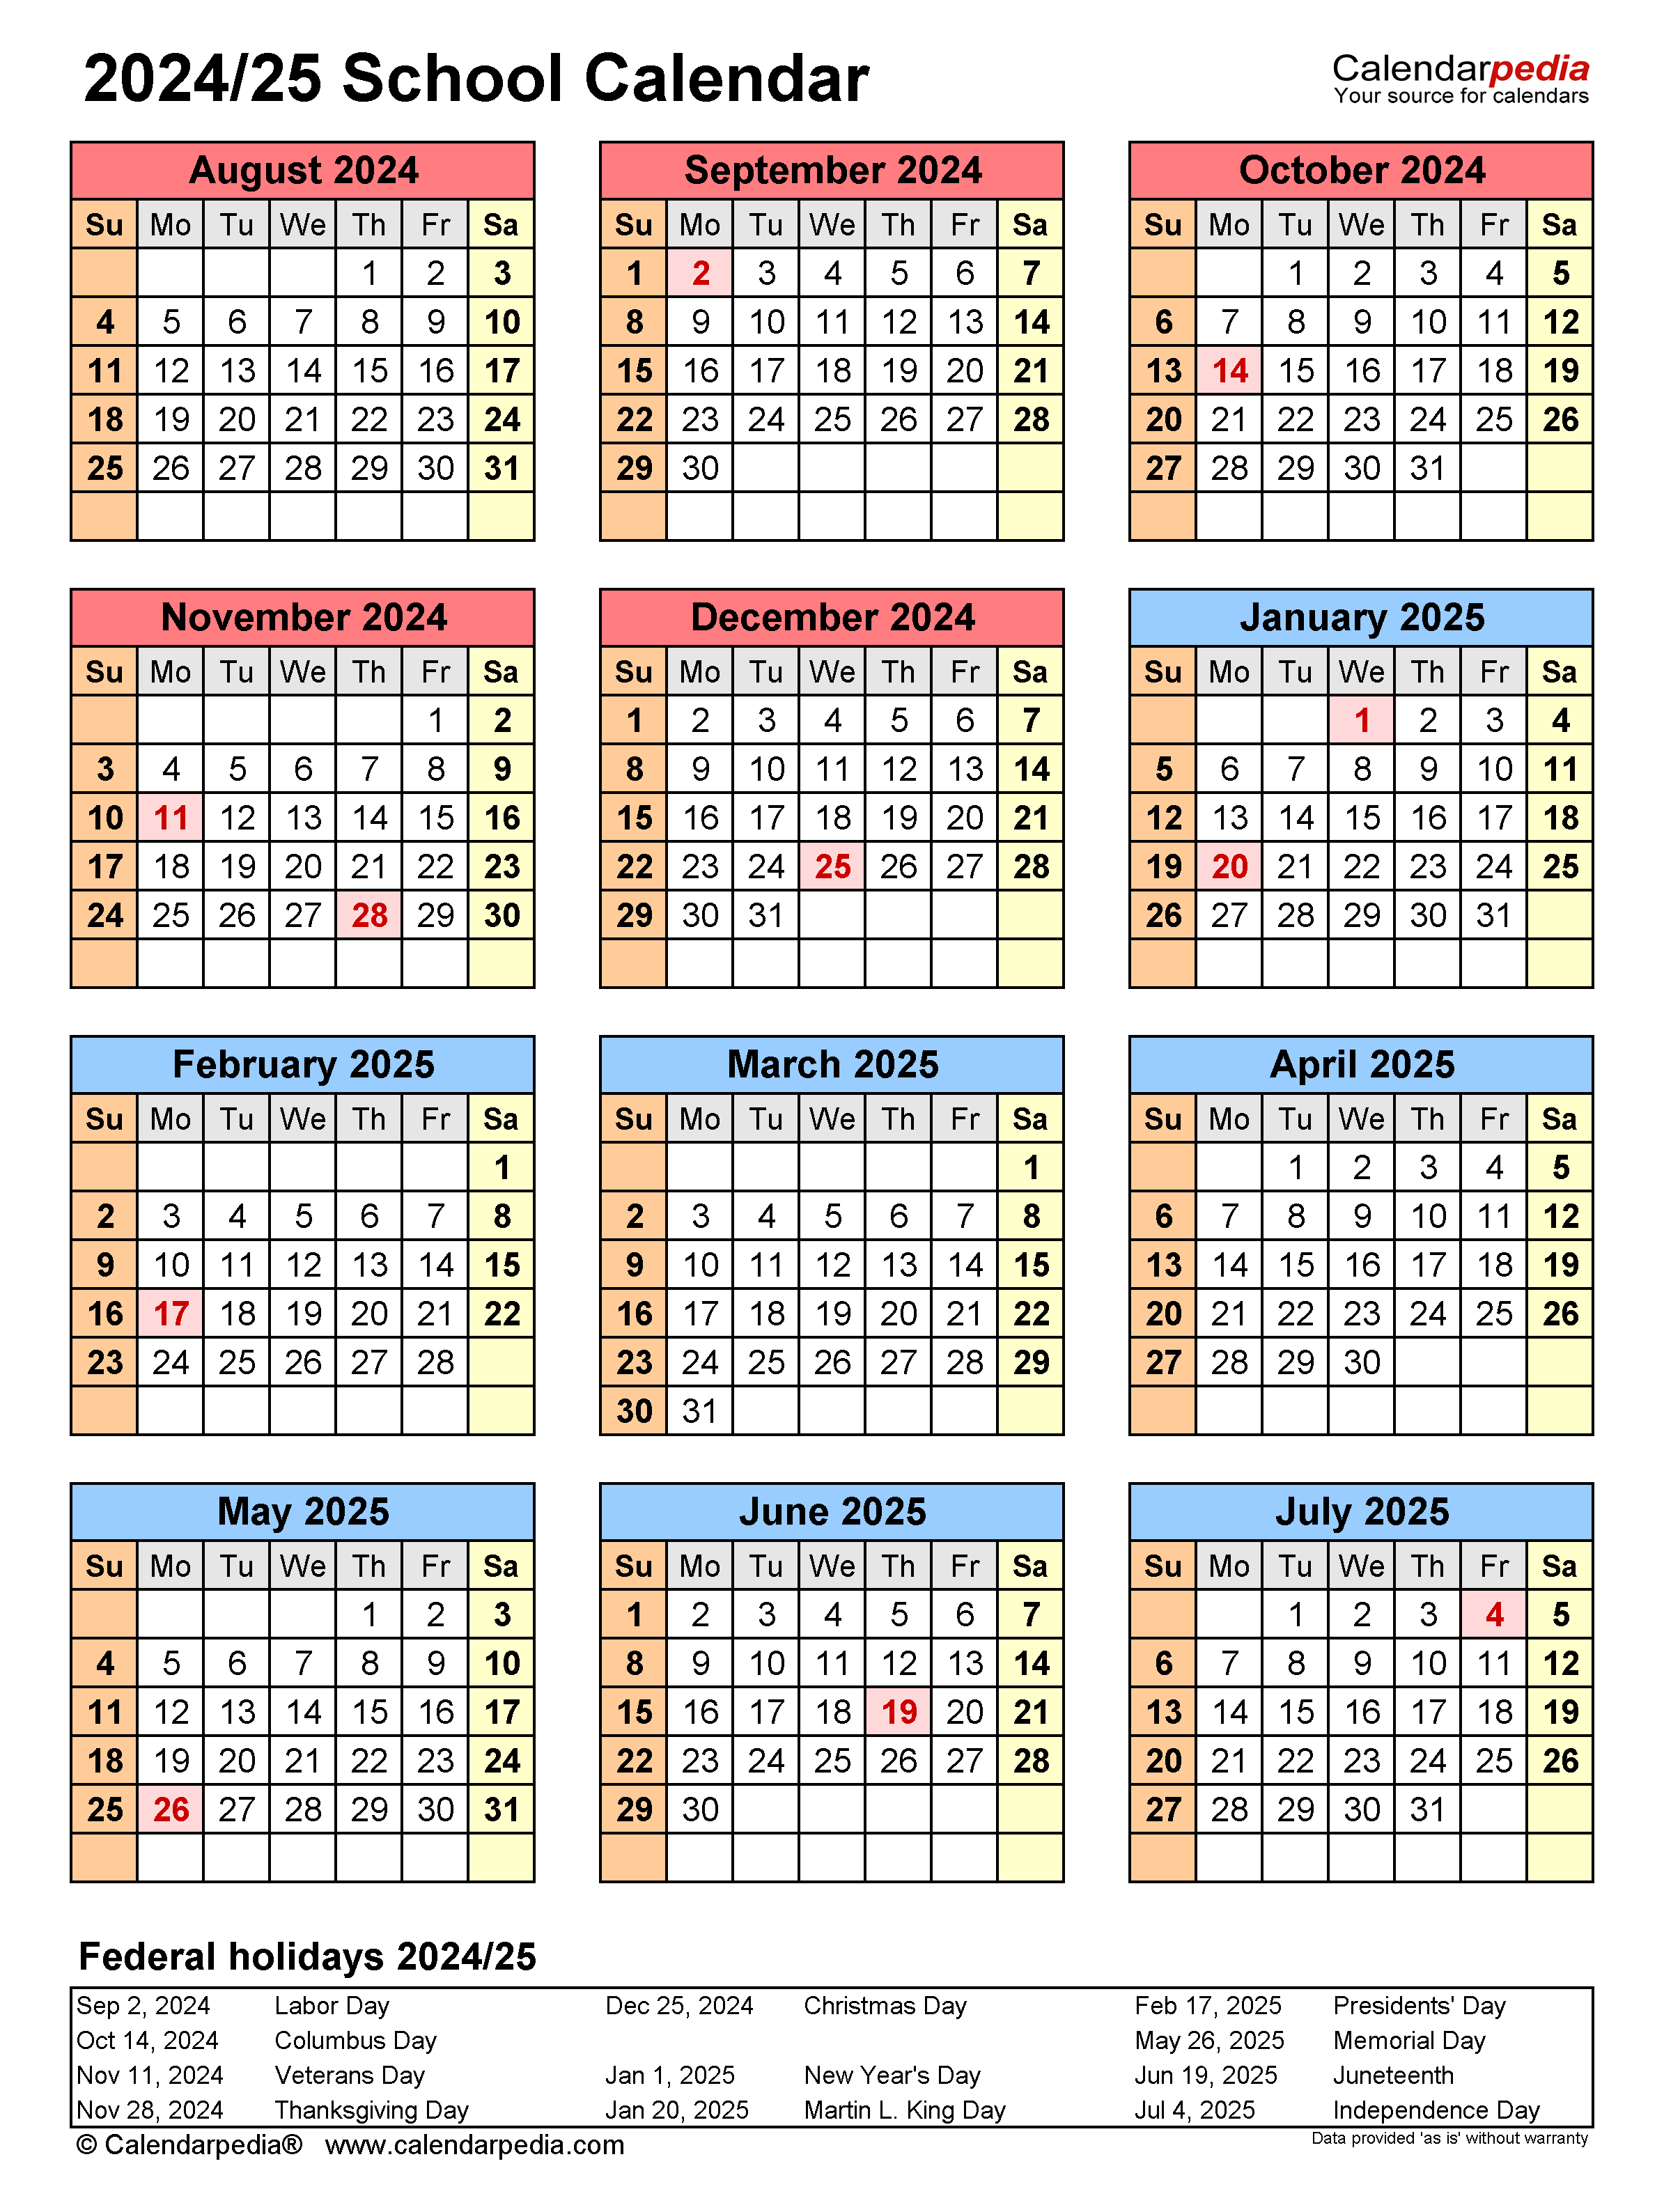 ncsu-2024-calendar-vikings-schedule-2024